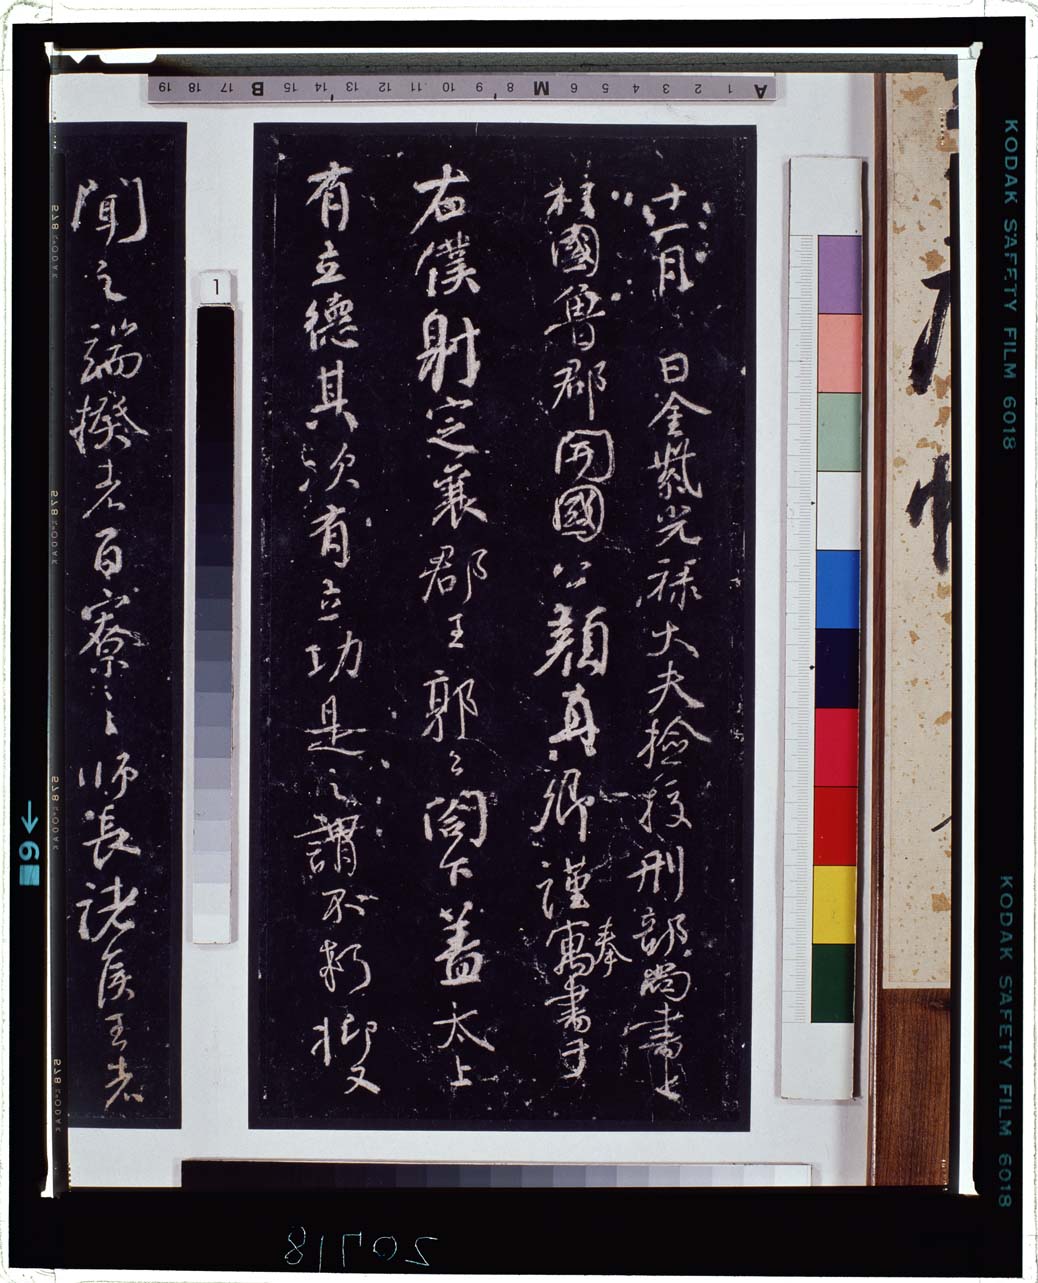 C0020718 争座位稿（拓本） - 東京国立博物館 画像検索